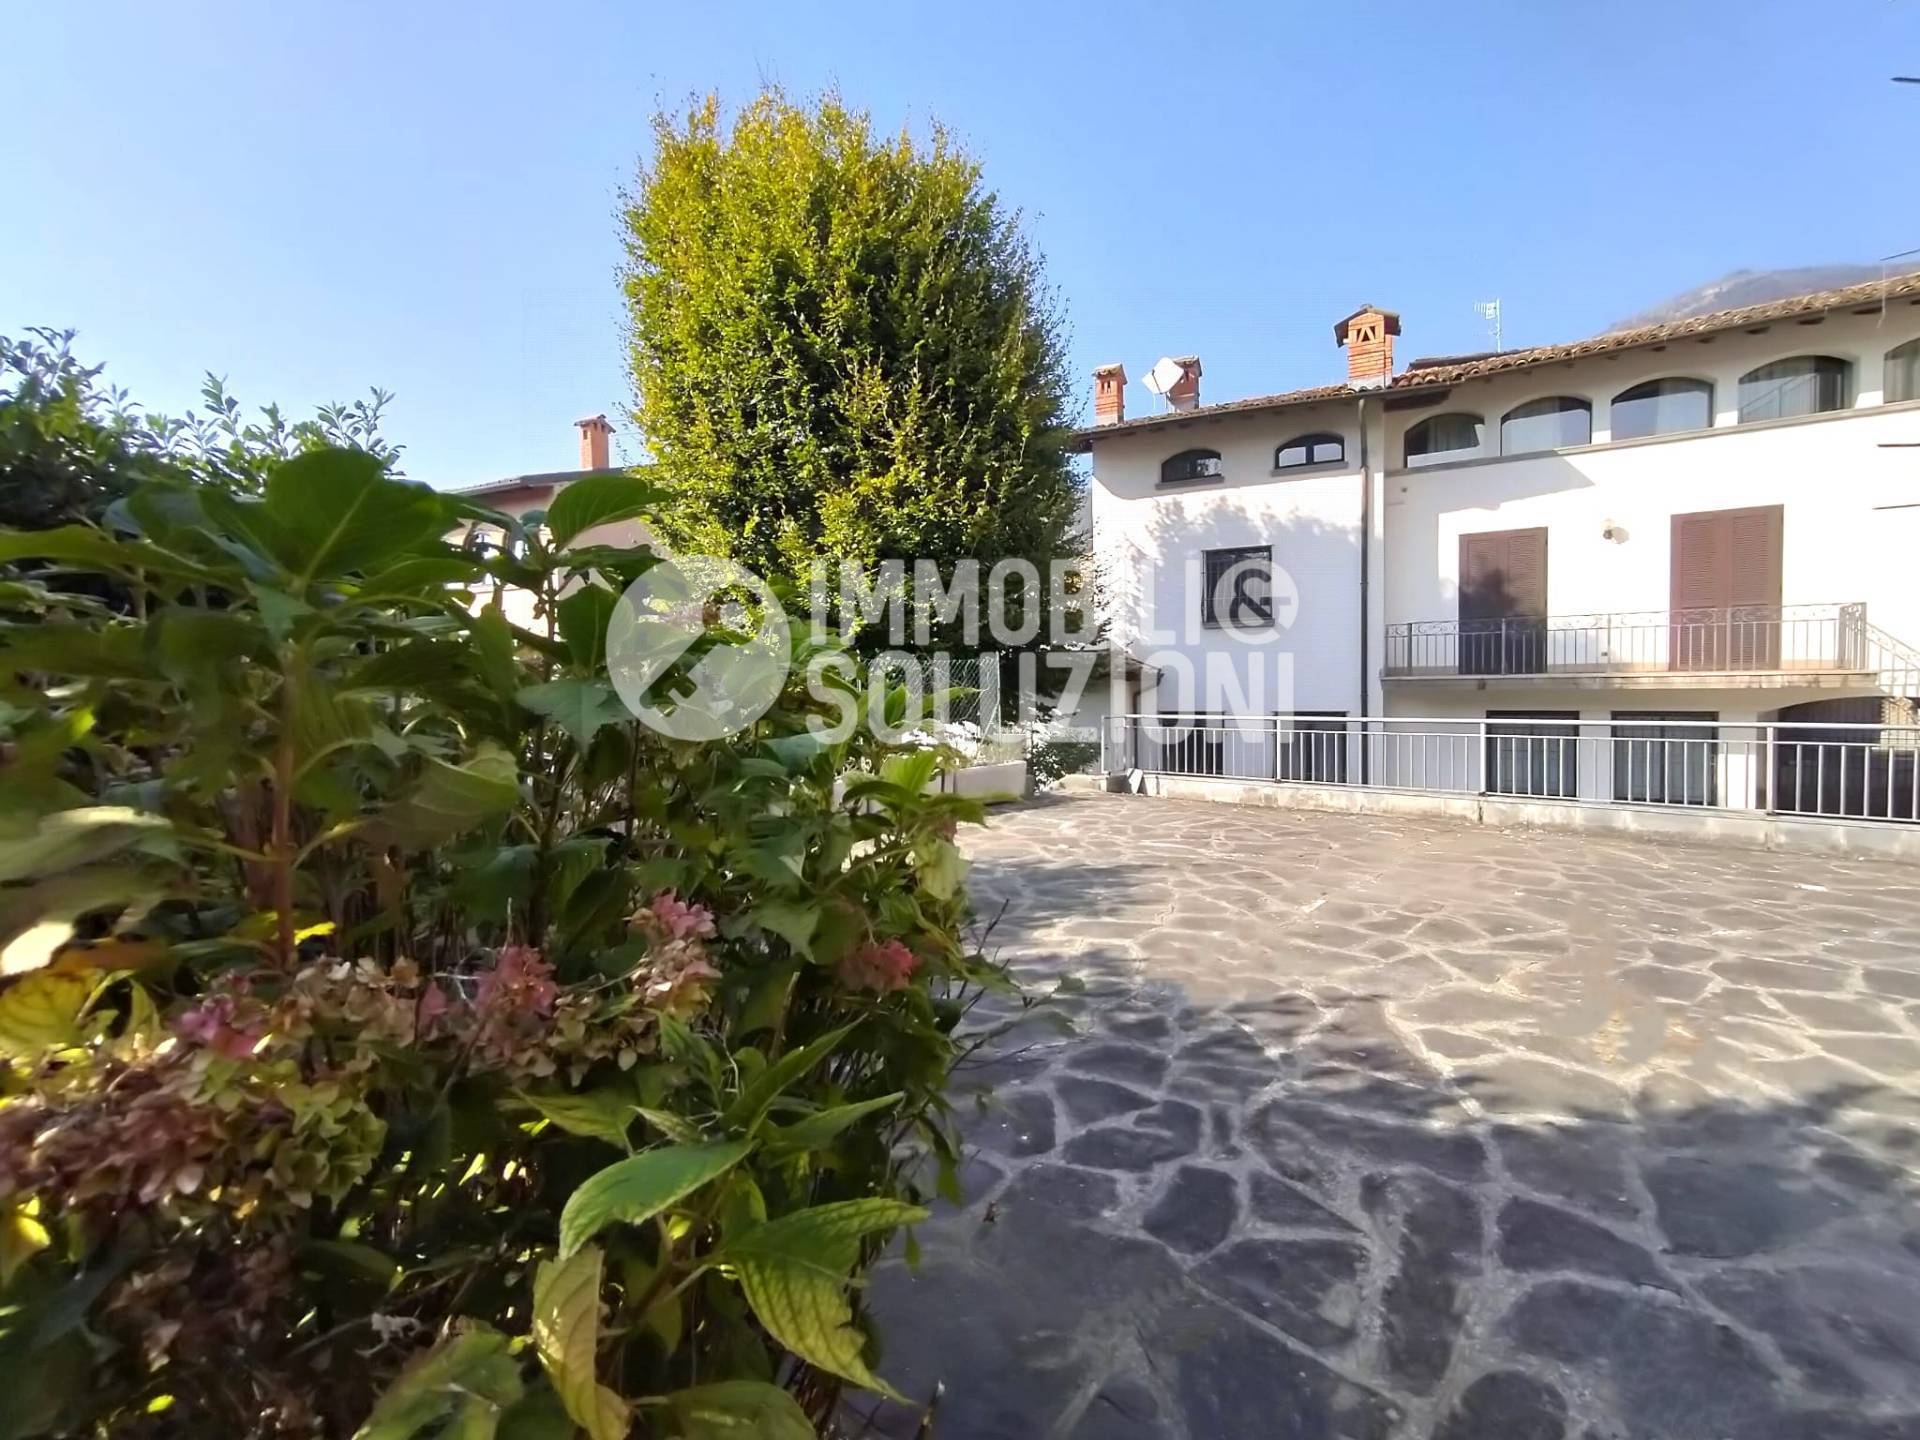 Villa in vendita a Gandino, 10 locali, prezzo € 299.000 | PortaleAgenzieImmobiliari.it